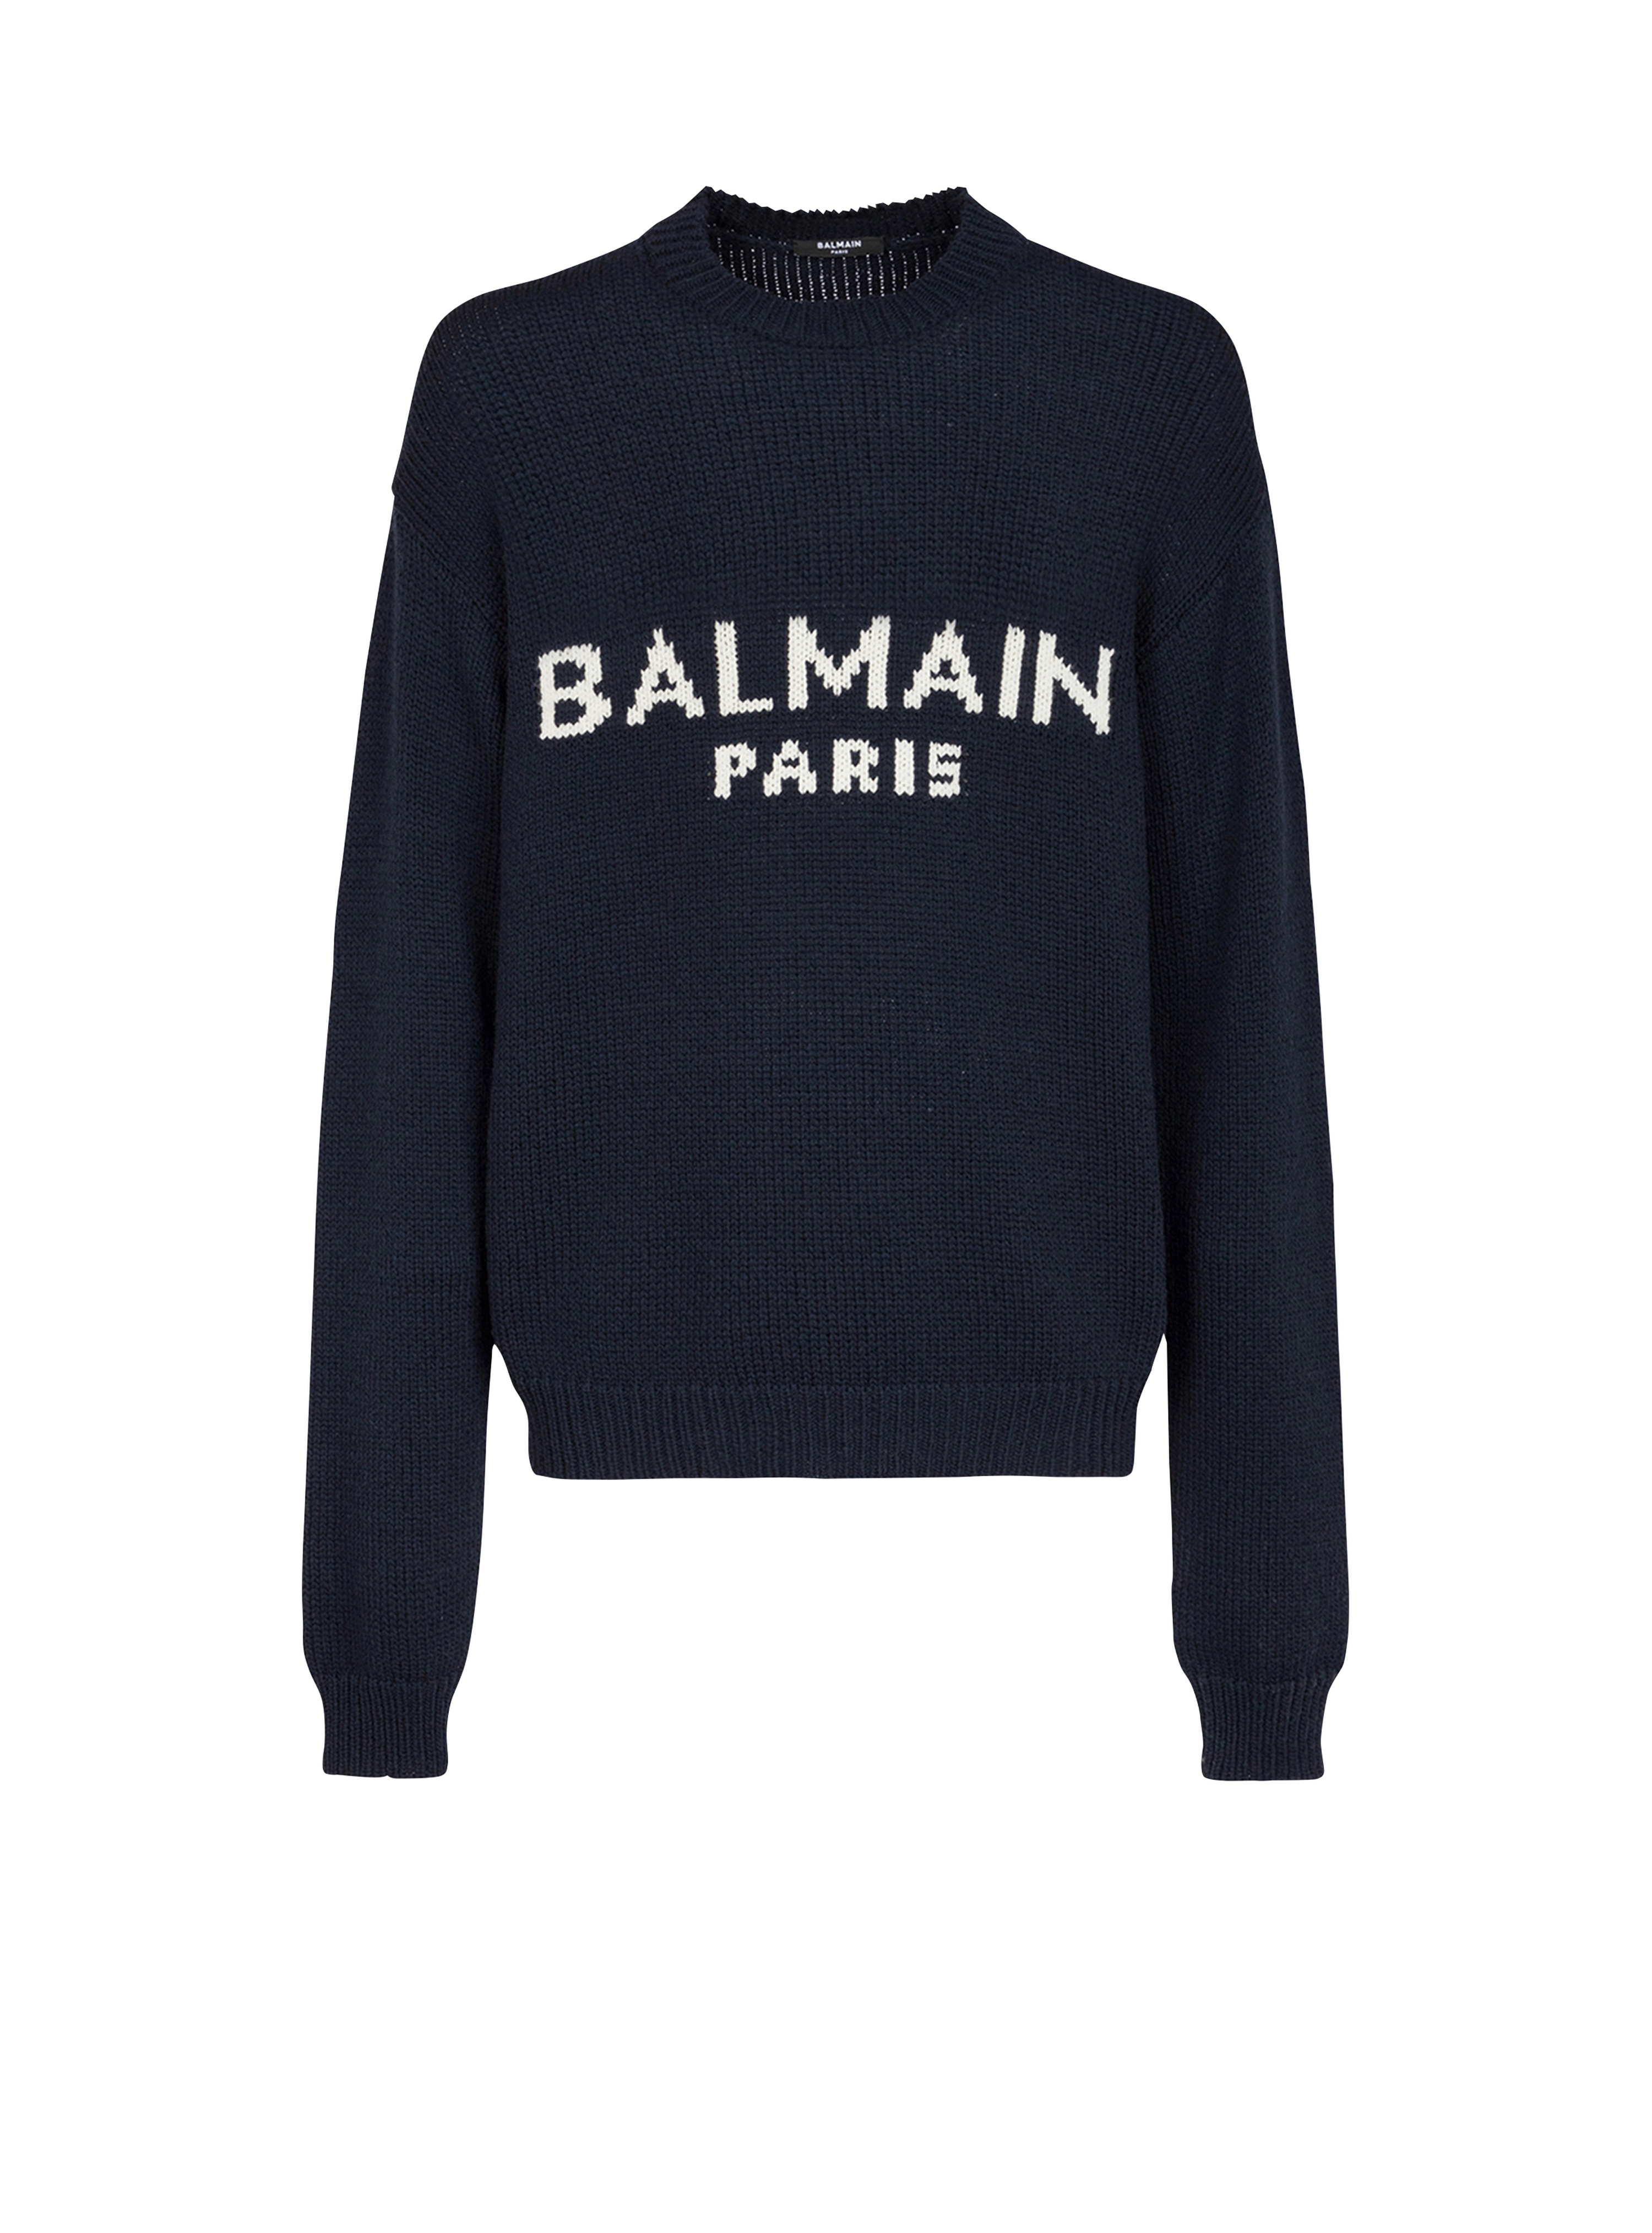 Wollpullover mit Logo von Balmain Paris, schwarz